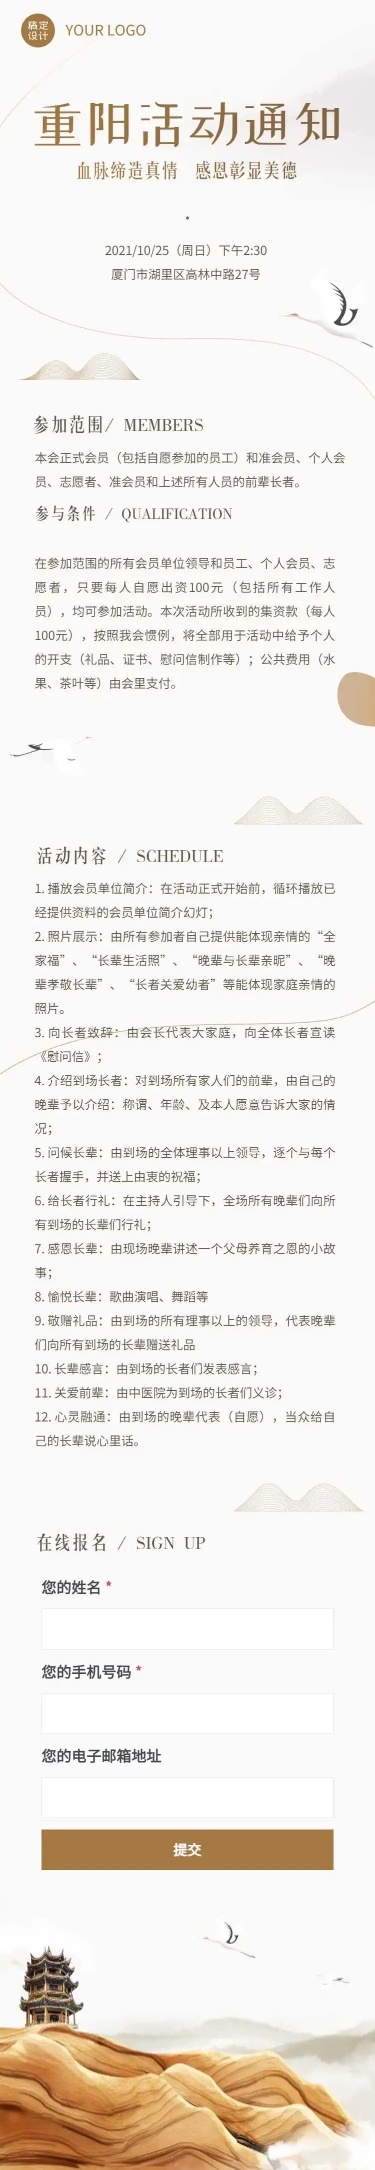 H5长页简约清新重阳节社区公益活动通知